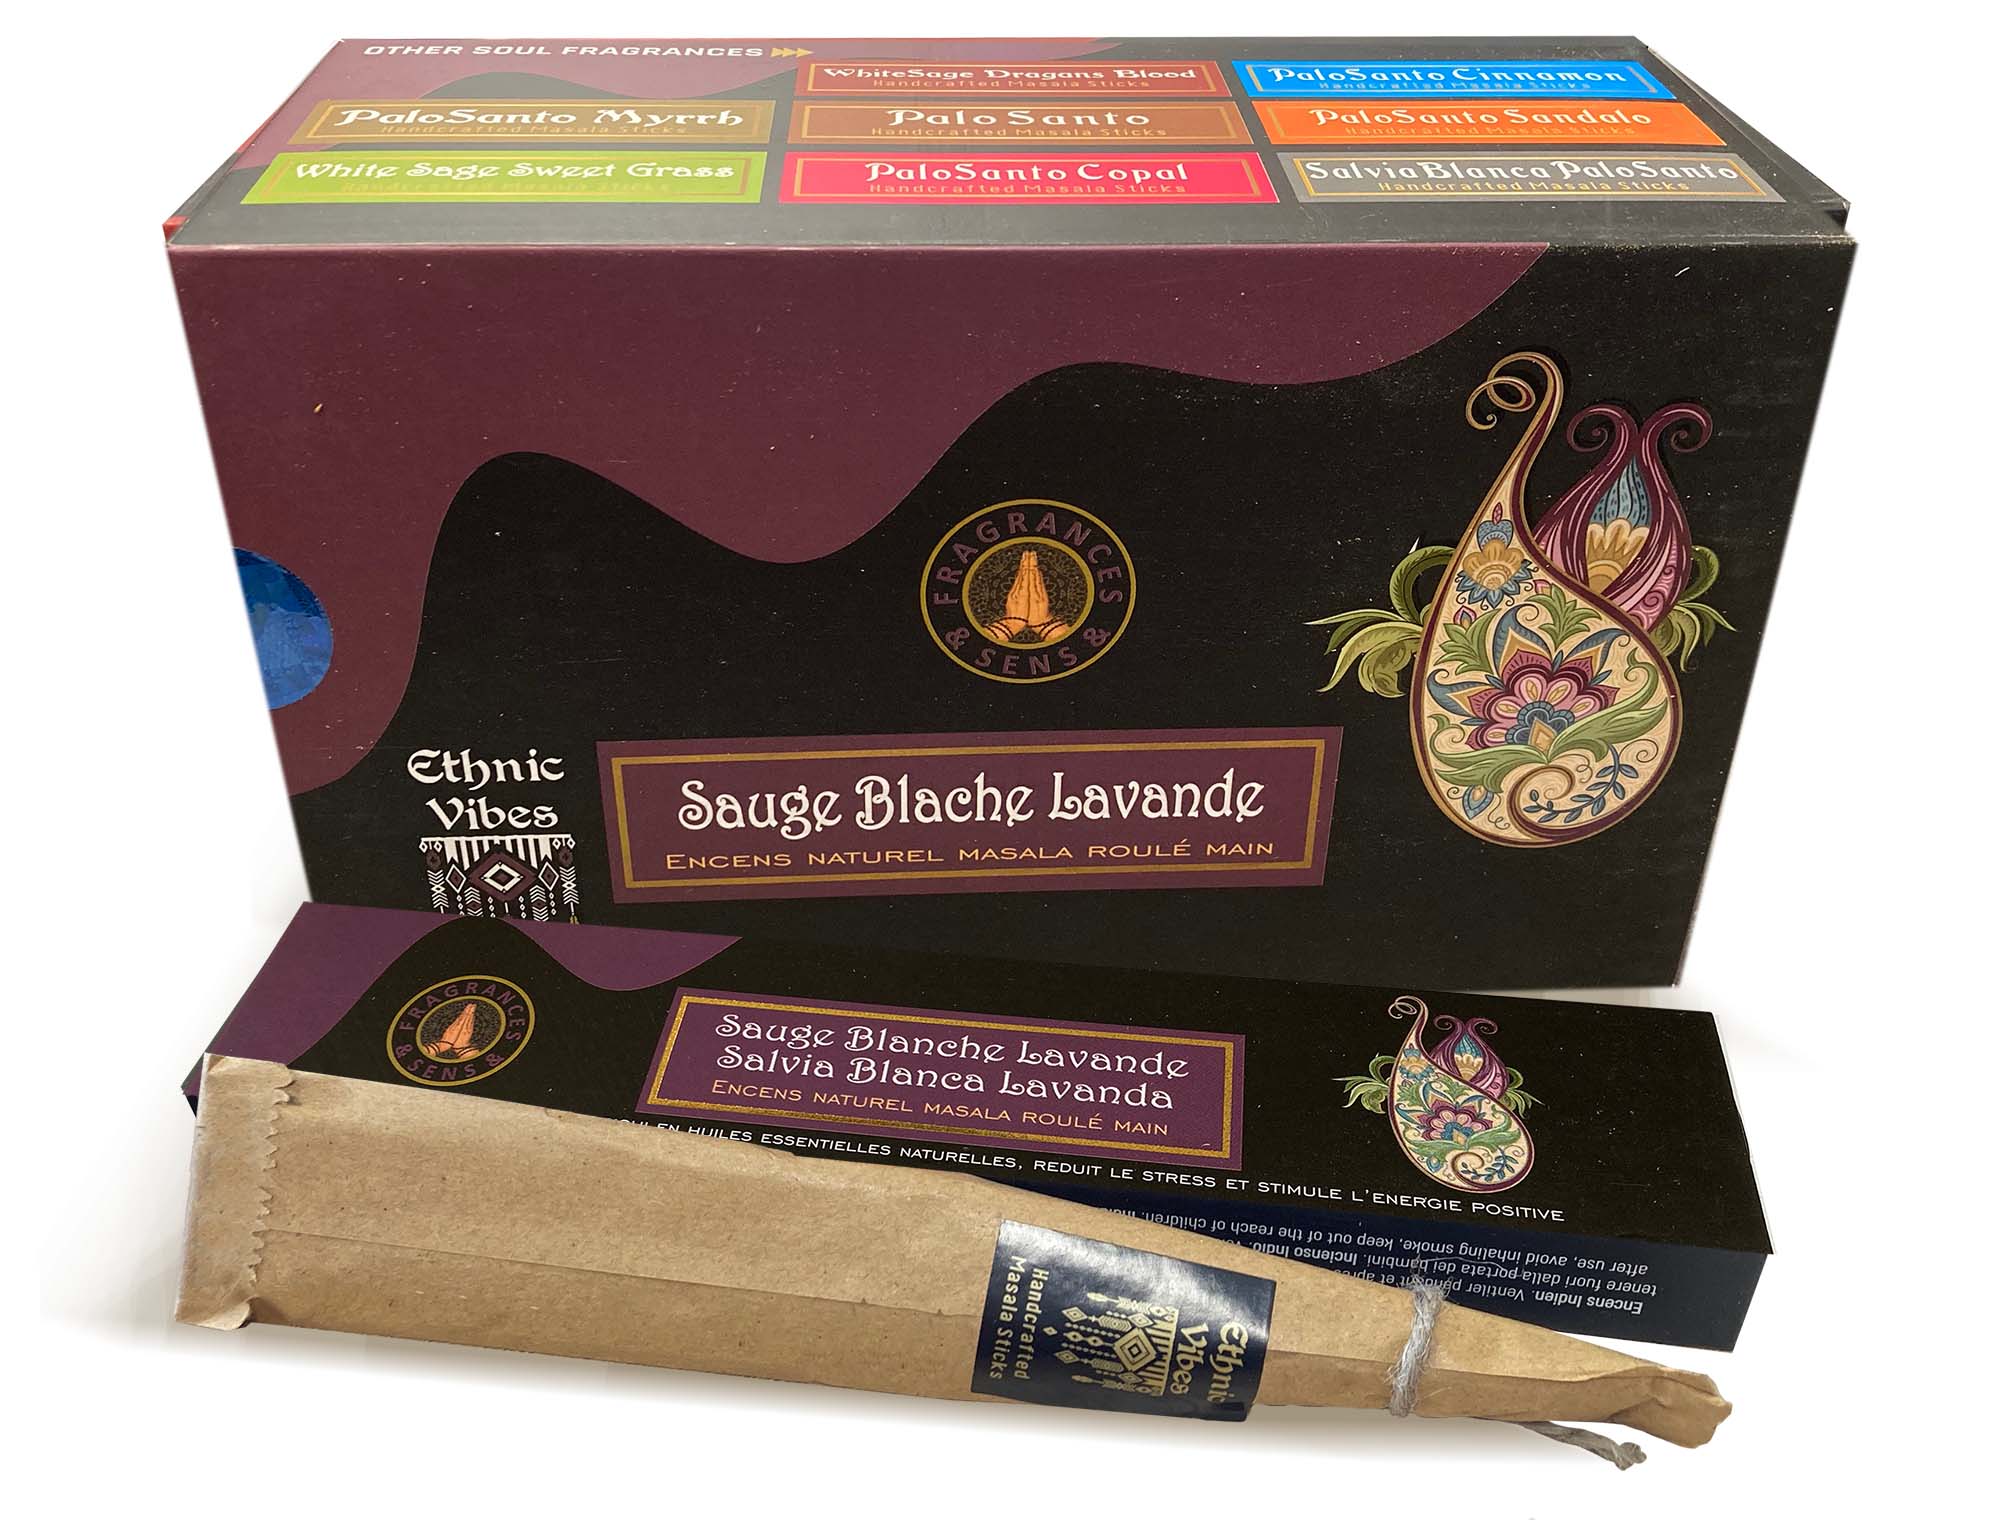 Fragrances & Sens Ethnic Vibes Whitesage & Lavander masala incense 15g